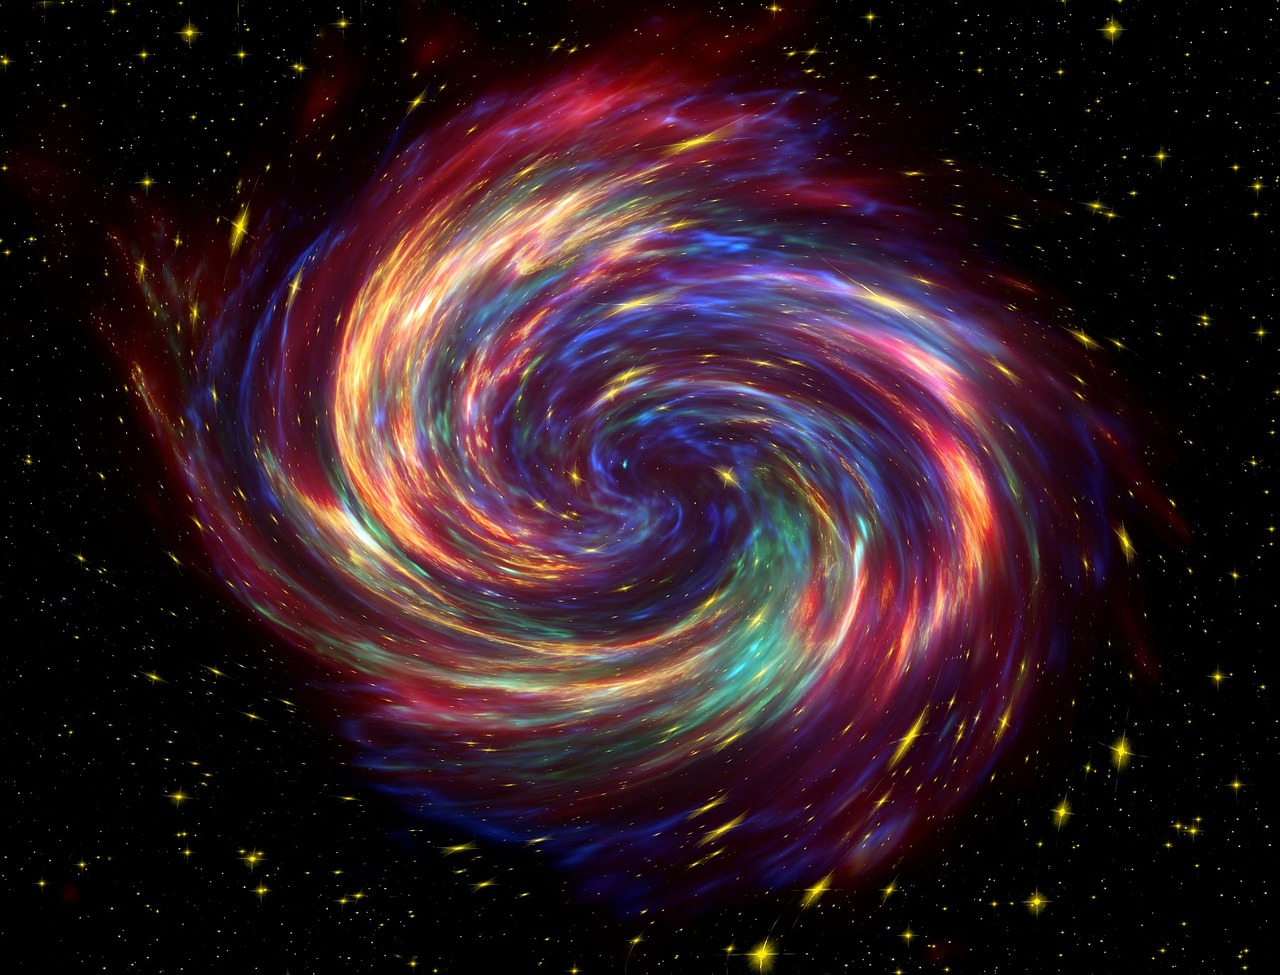 Galaxy spiral